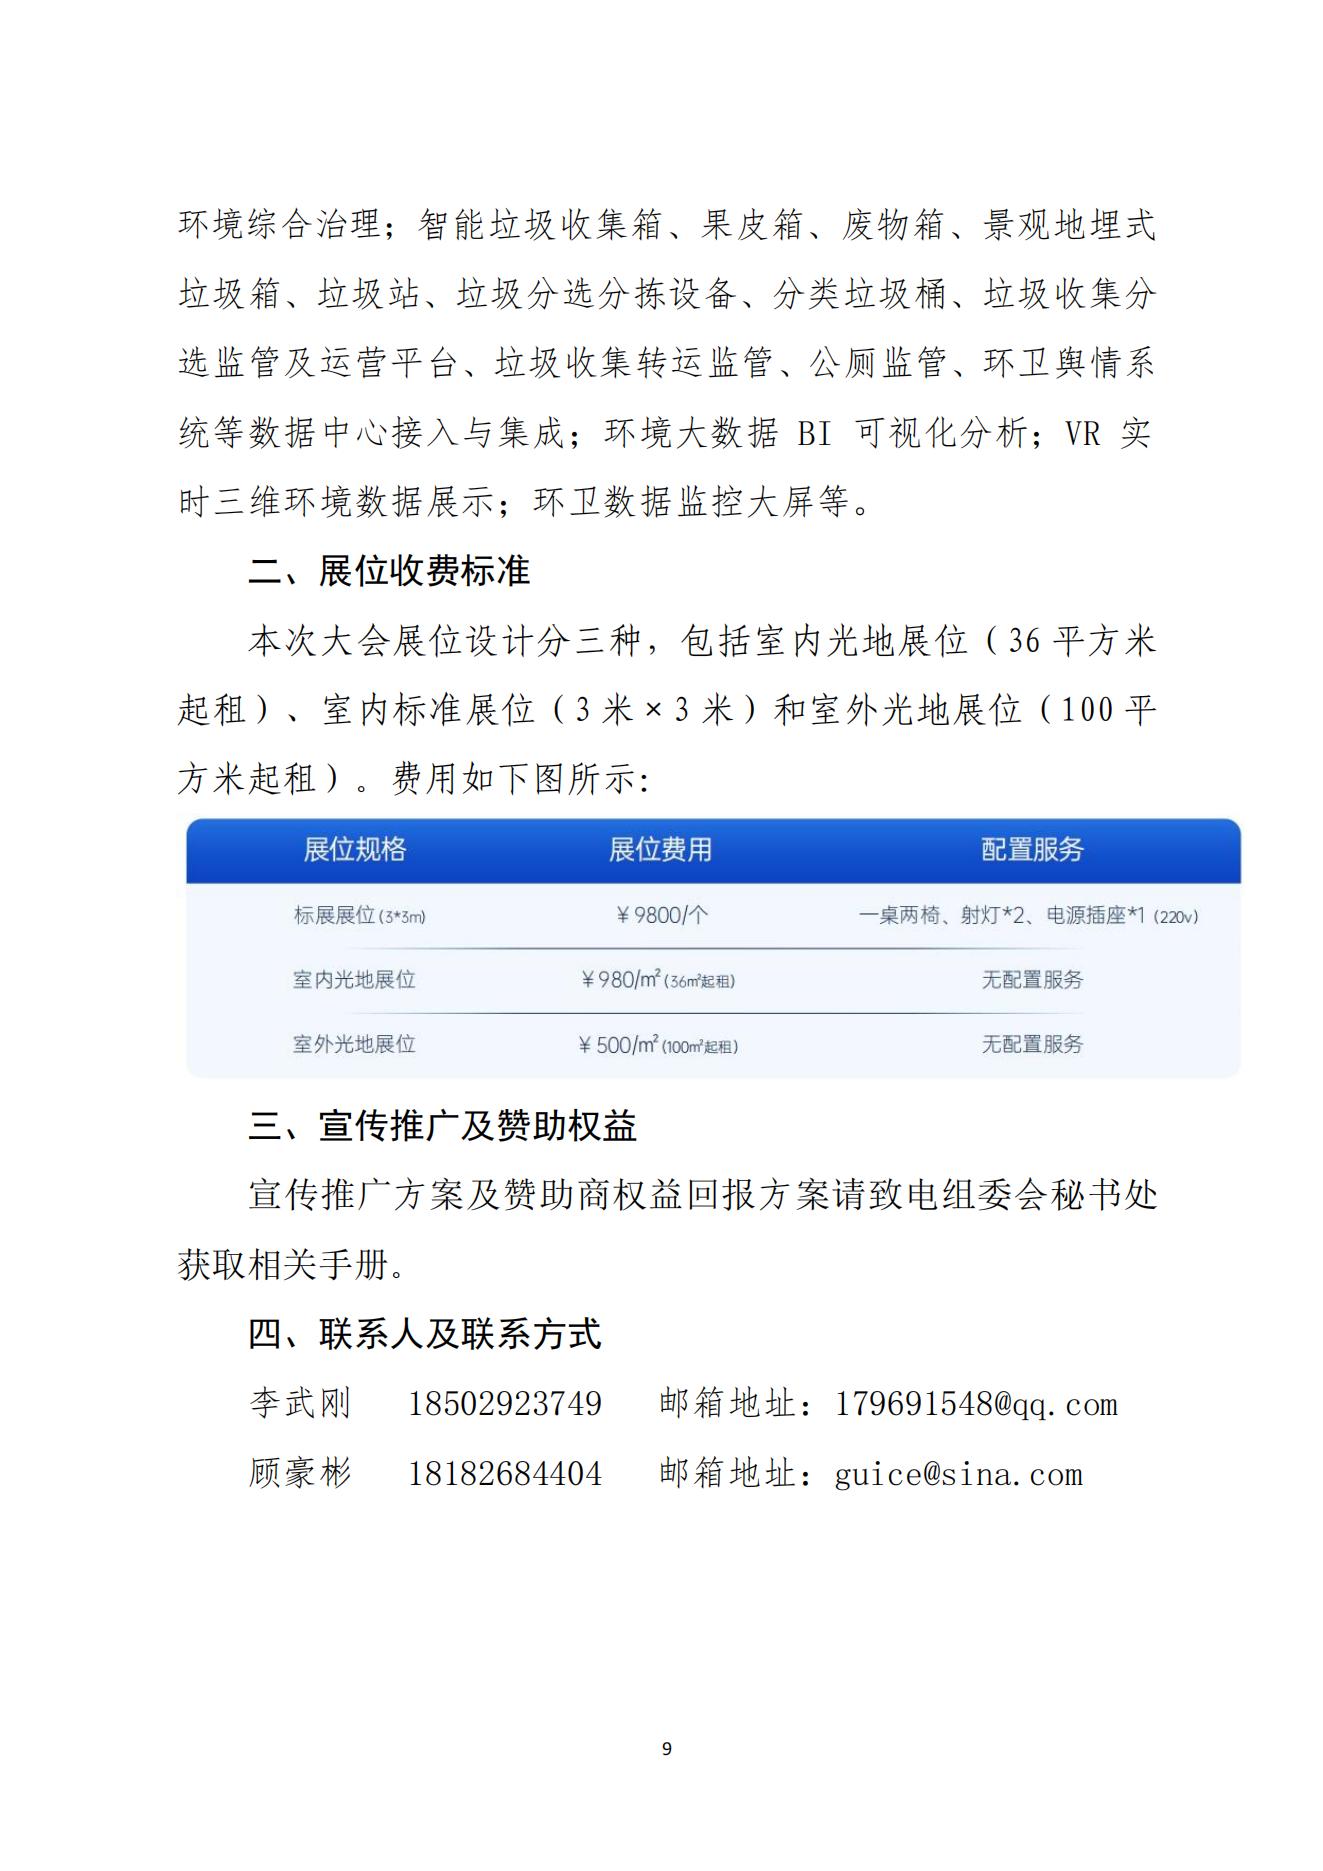 中国市政工程协会关于举办2023中国西部数字城乡发展产业博览会的通知11.9(1)_08.jpg